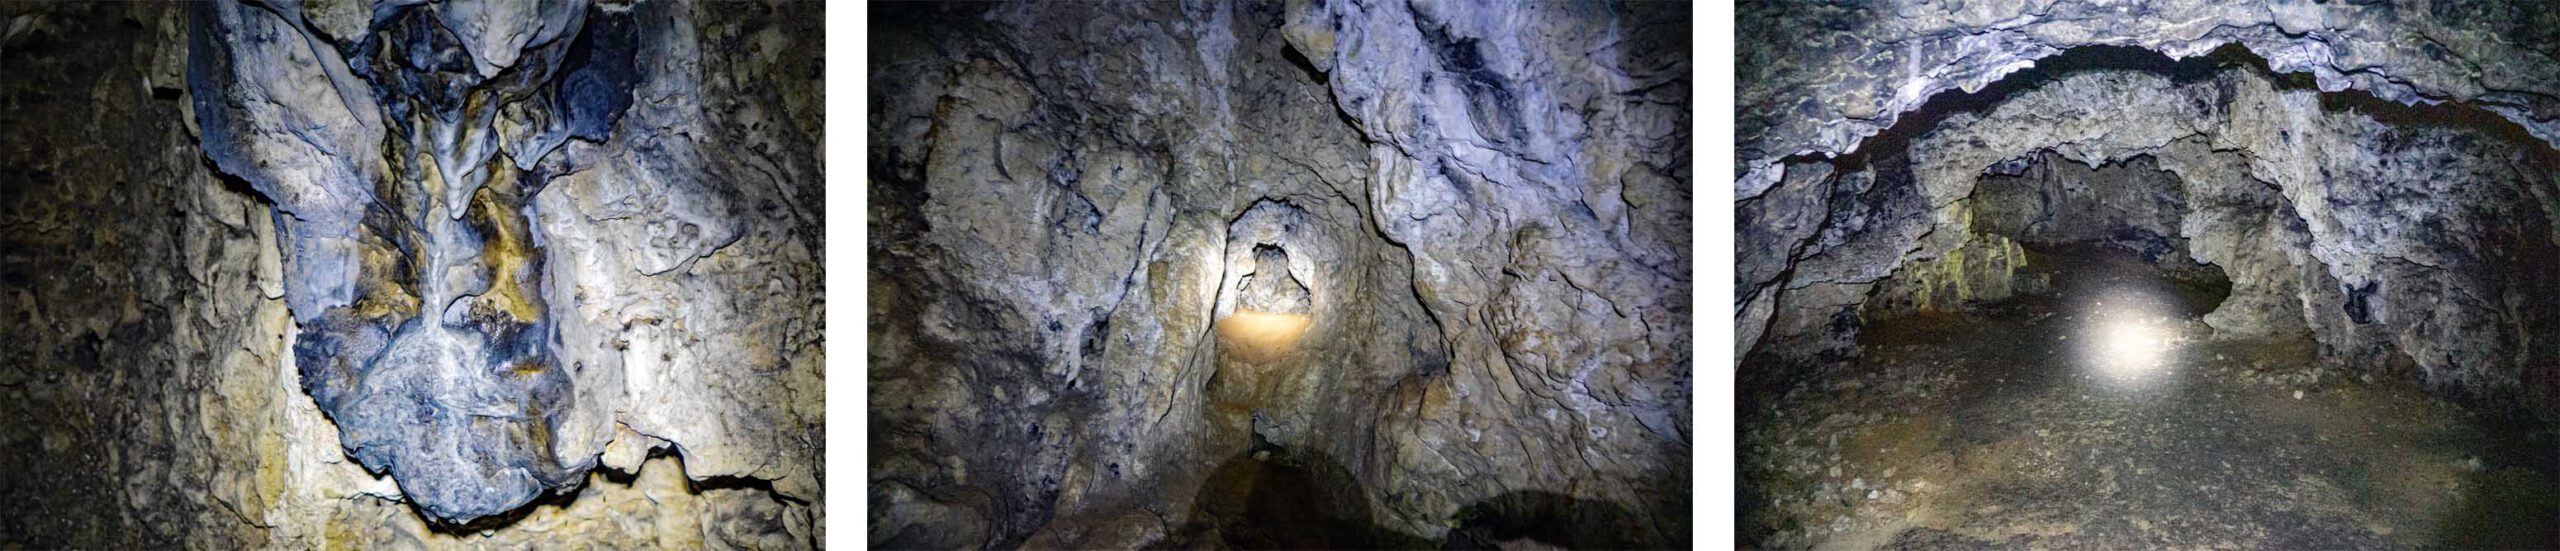 rohenloch höhle veldensteiner forst plecher höhlenweg